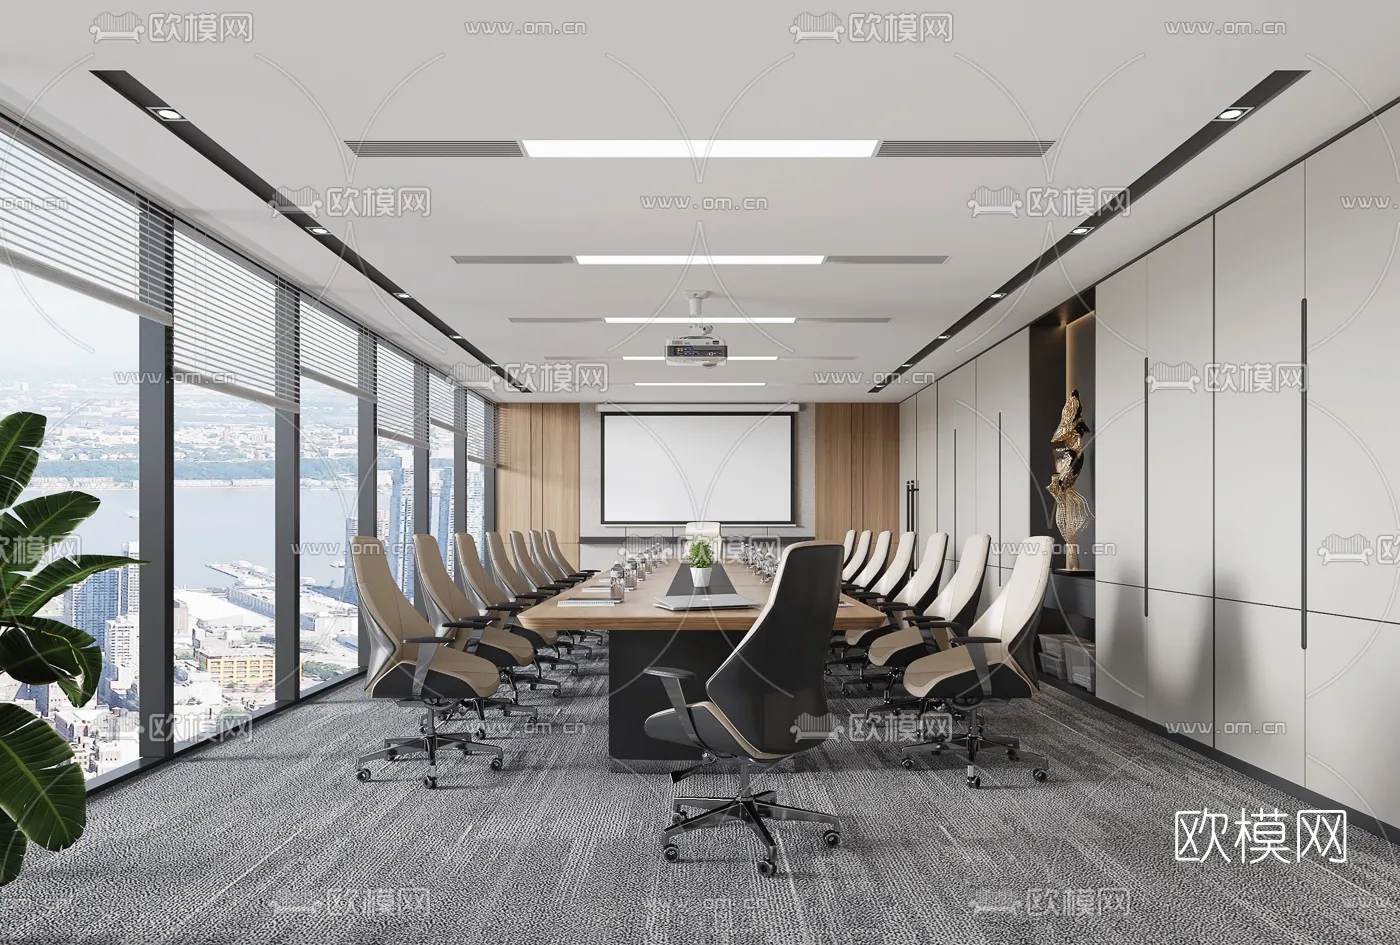 Meeting Room 3D Scenes – 1443